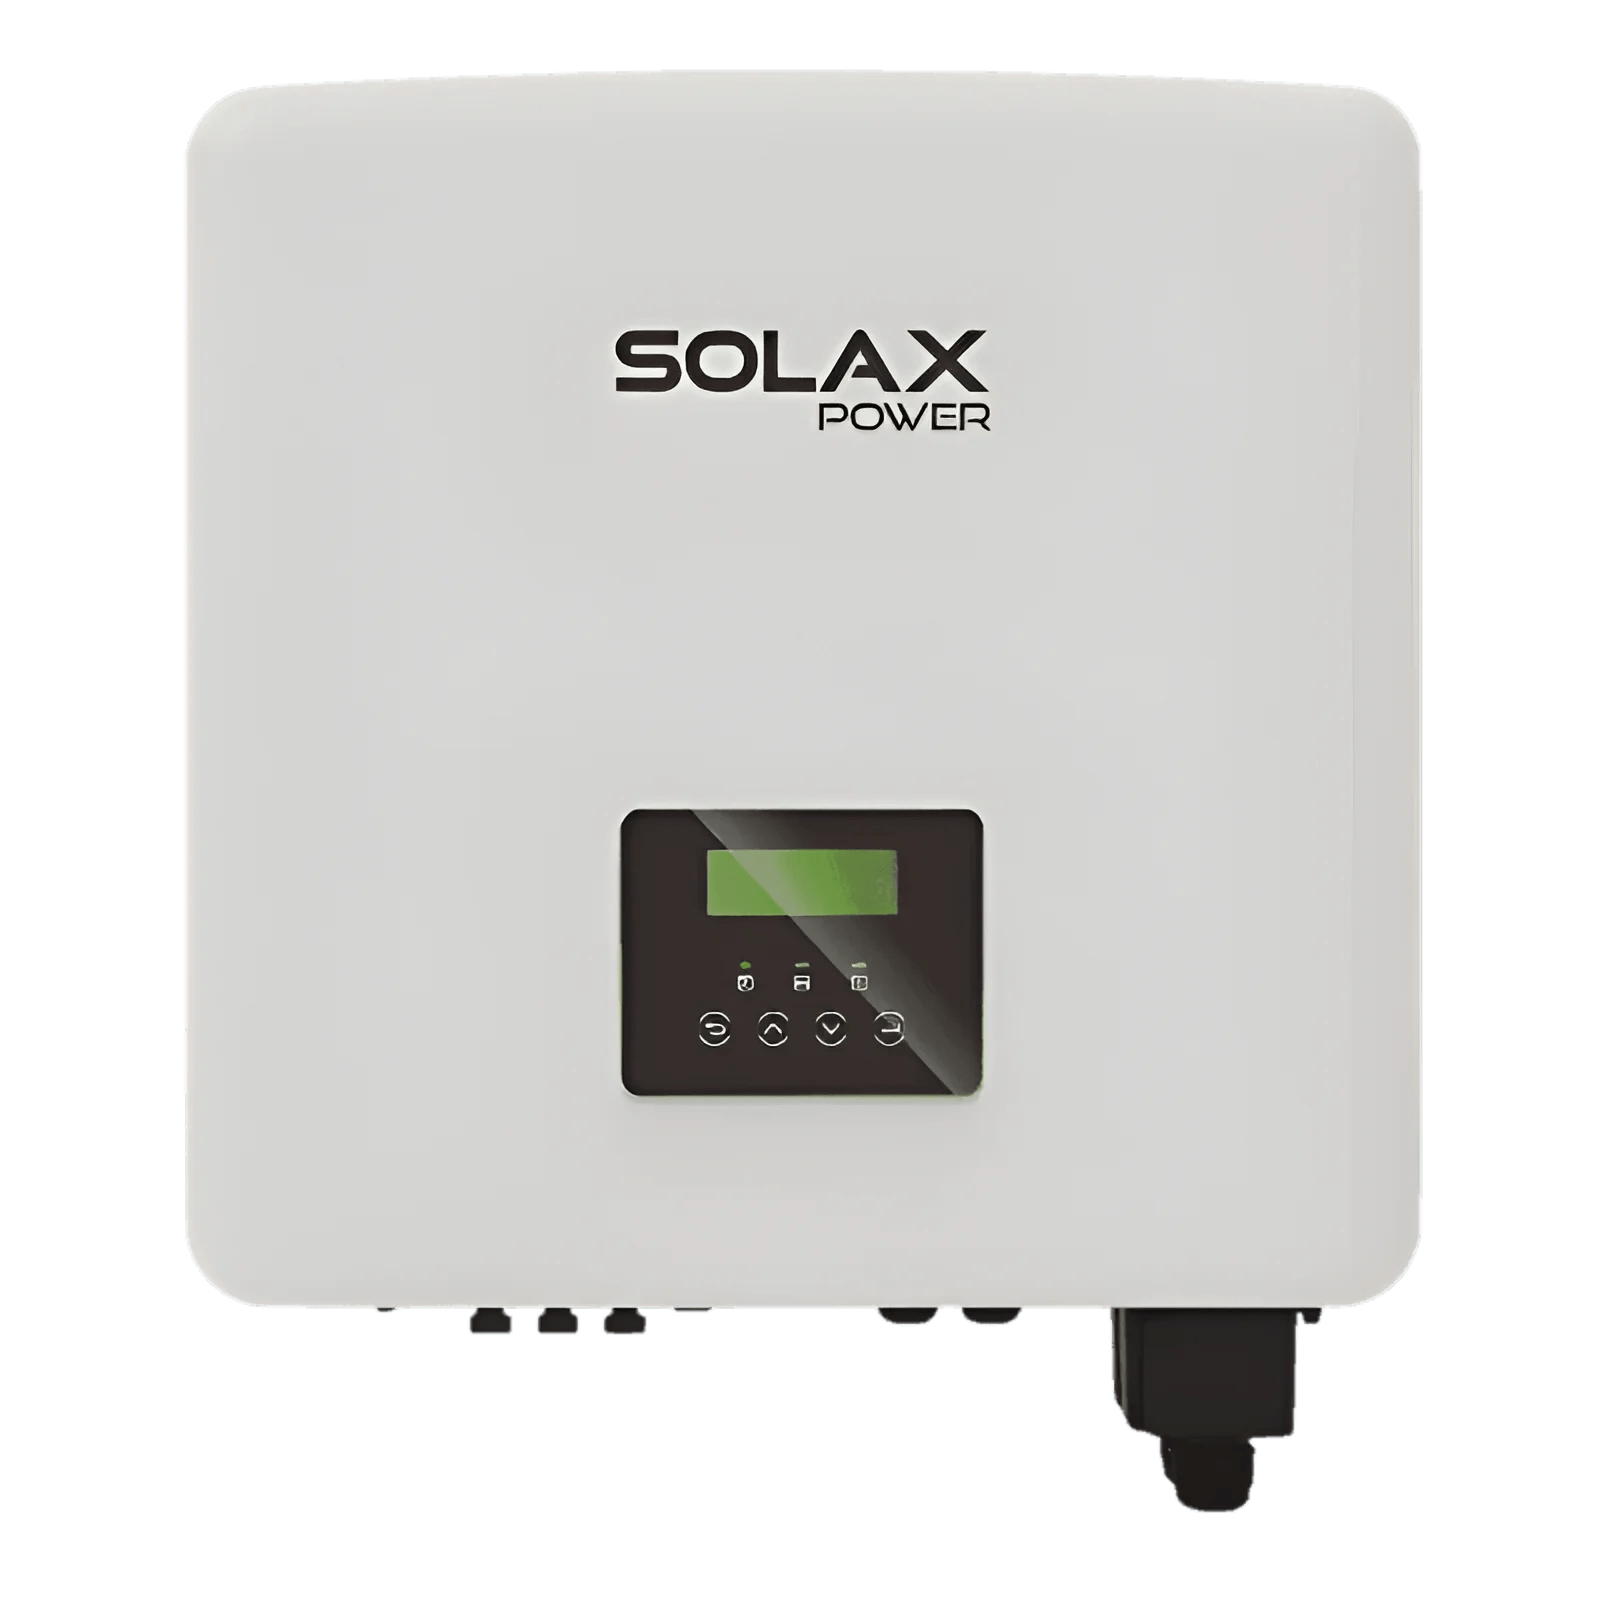 Inverter Solax Power X3-Hybrid-12.0-D-G4 X3 Hybrid Inverter G4, 12.0kW 3-ph, D version